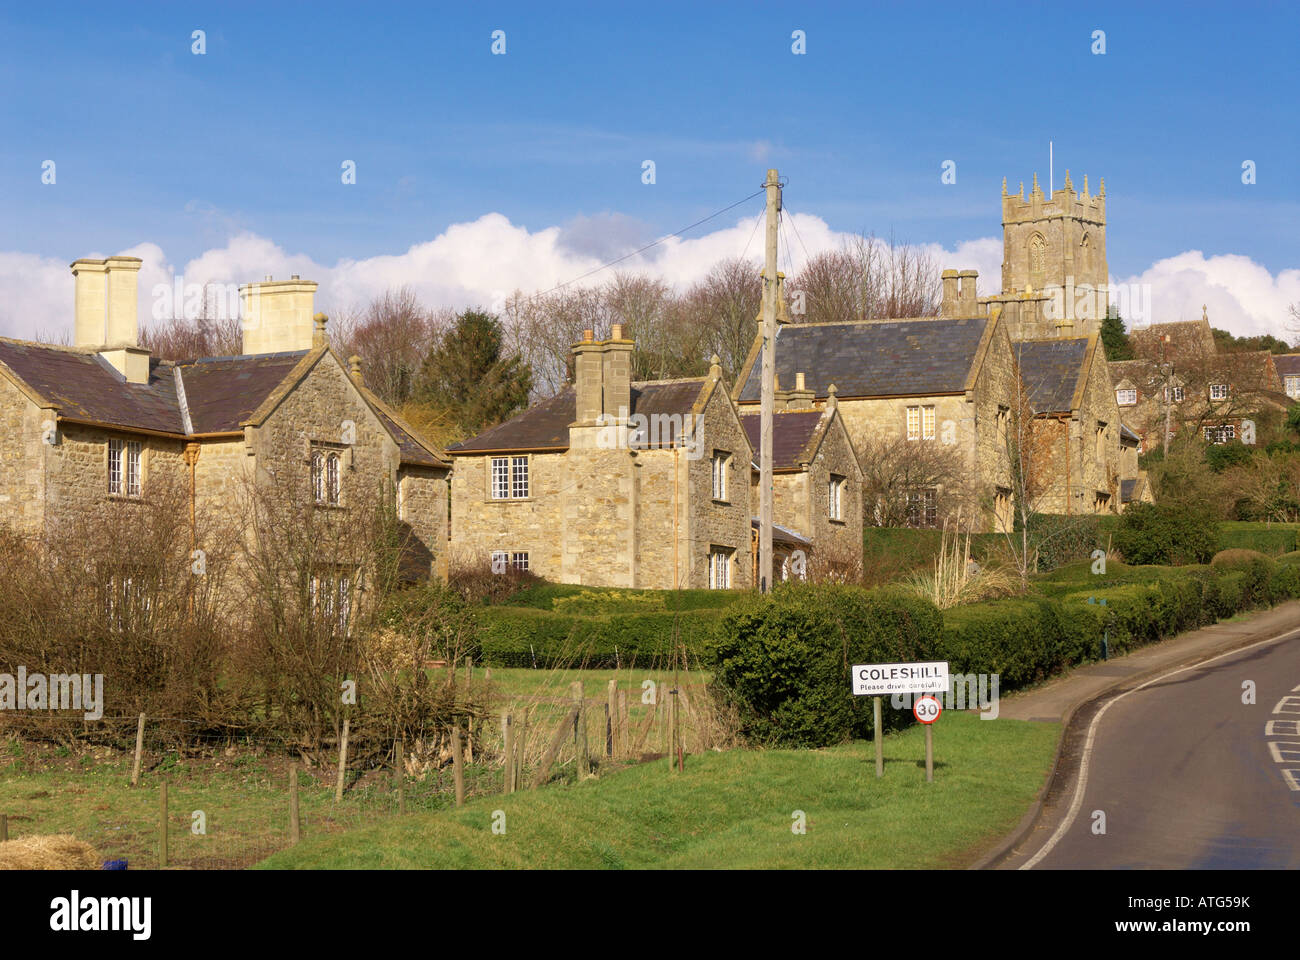 Coleshill village, Oxfordshire Stock Photo